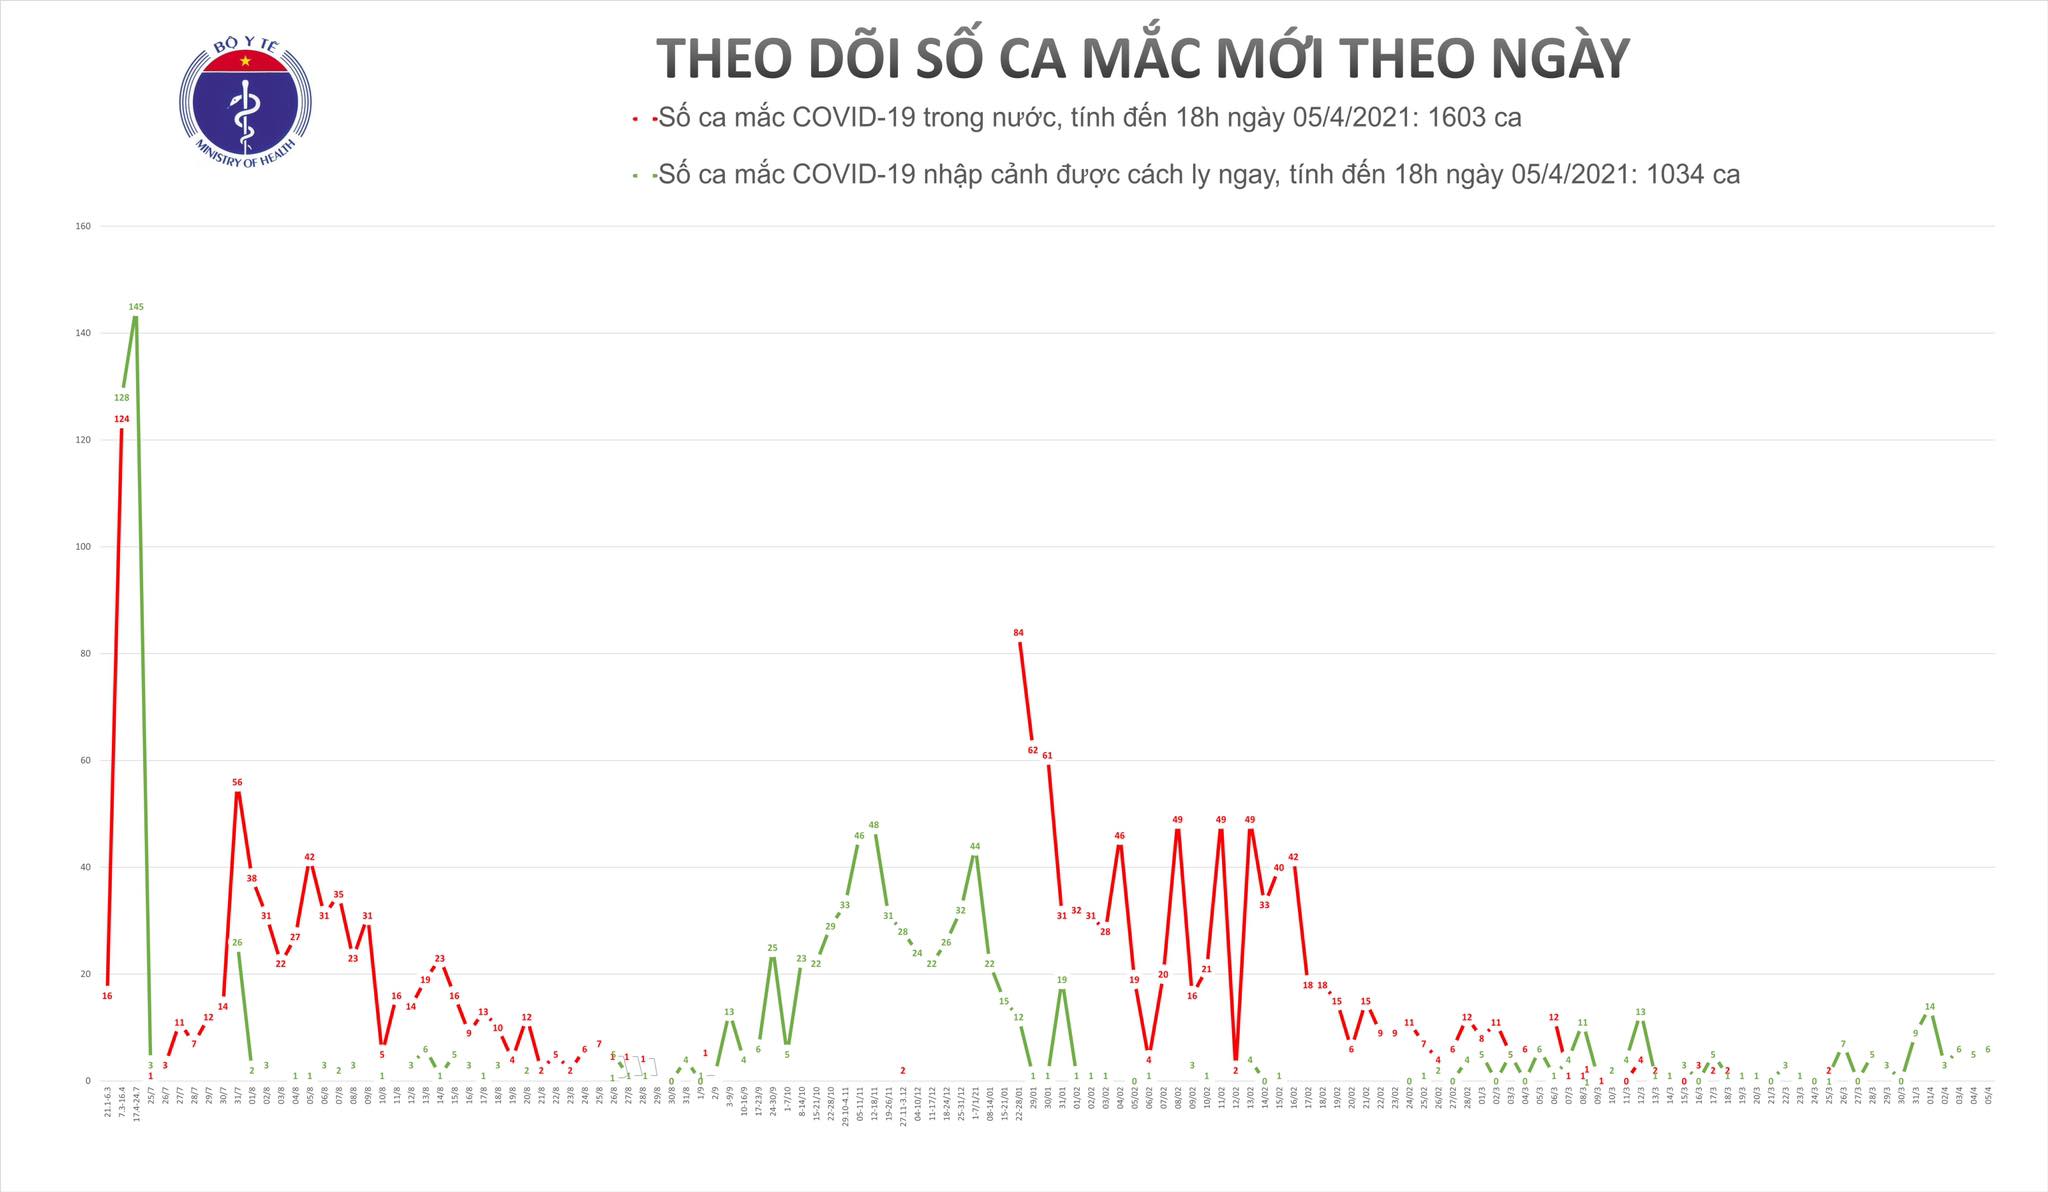 Có thêm 6 ca mắc COVID-19 tại Bắc Giang, Đà Nẵng, Quảng Nam và TP Hồ Chí Minh - Ảnh 1.